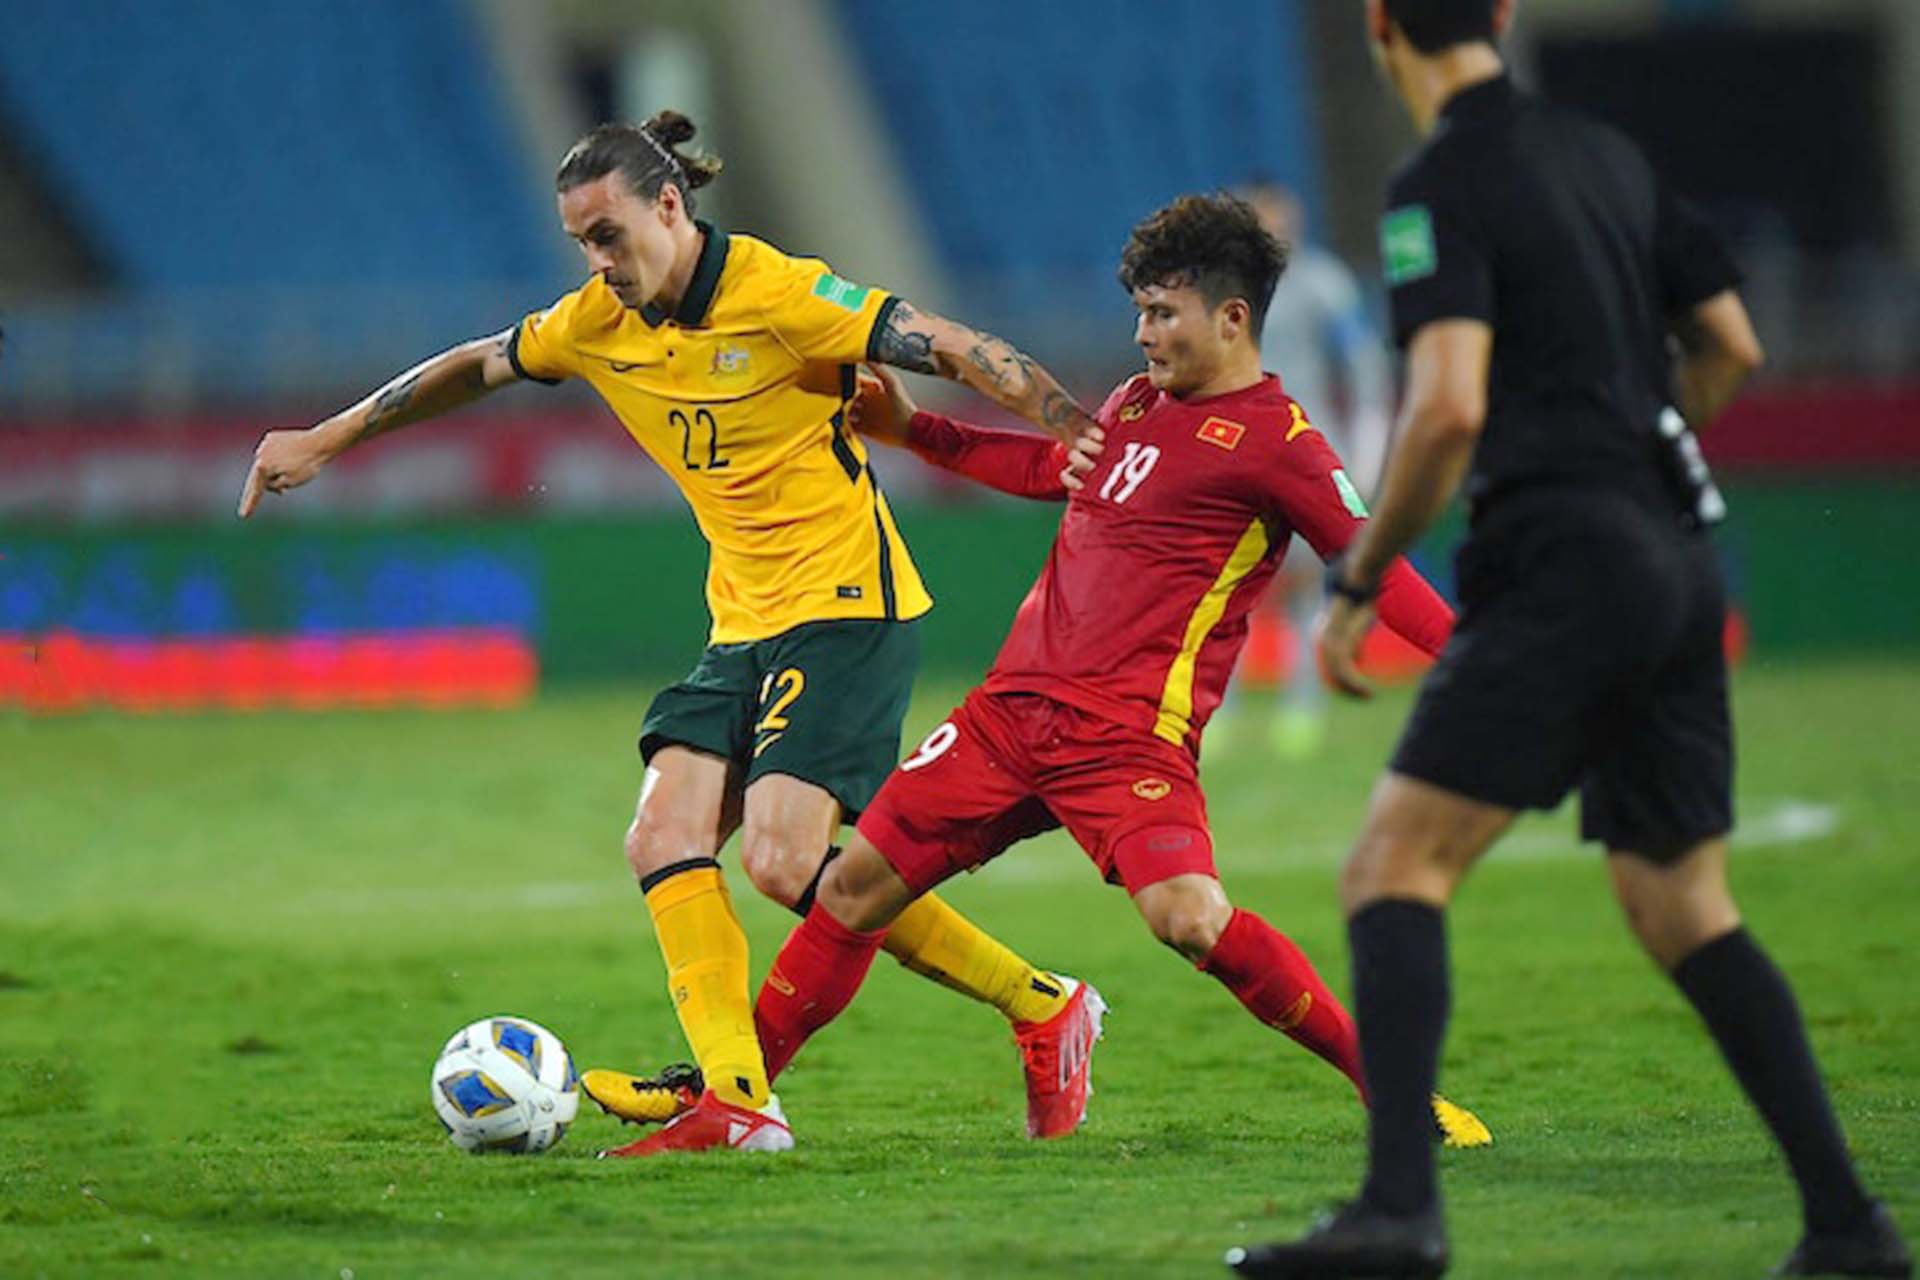 Đội tuyển Việt Nam bị từ chối 1 tình huống penalty gây tranh cãi. (Ảnh: Heromag)